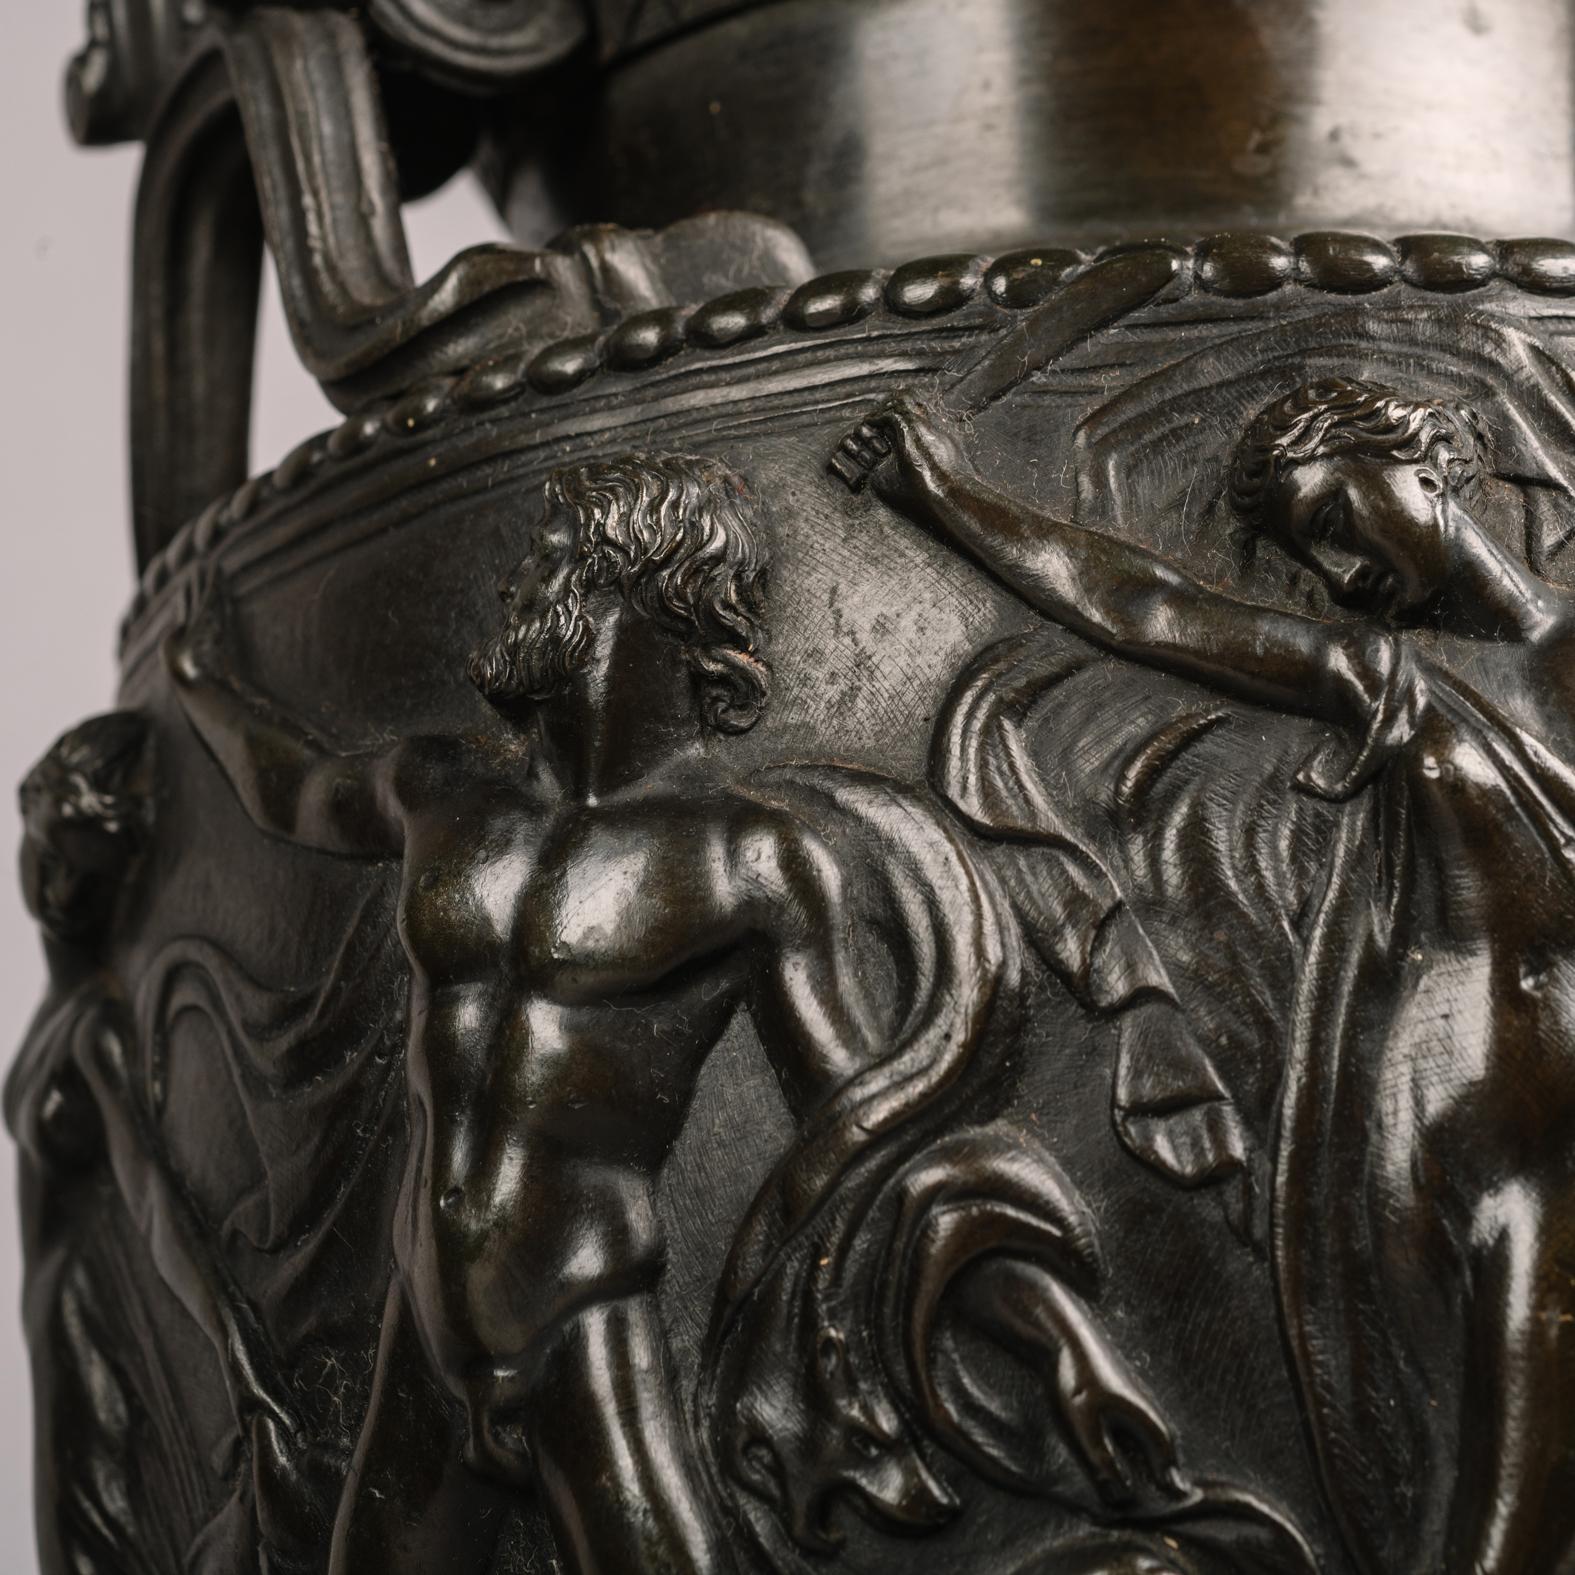 Une belle paire de modèles de vase townley en bronze patiné, fondus d'après l'antique, par Auguste-Maximilien Delafontaine.

Le bronze est estampillé sur la face inférieure 